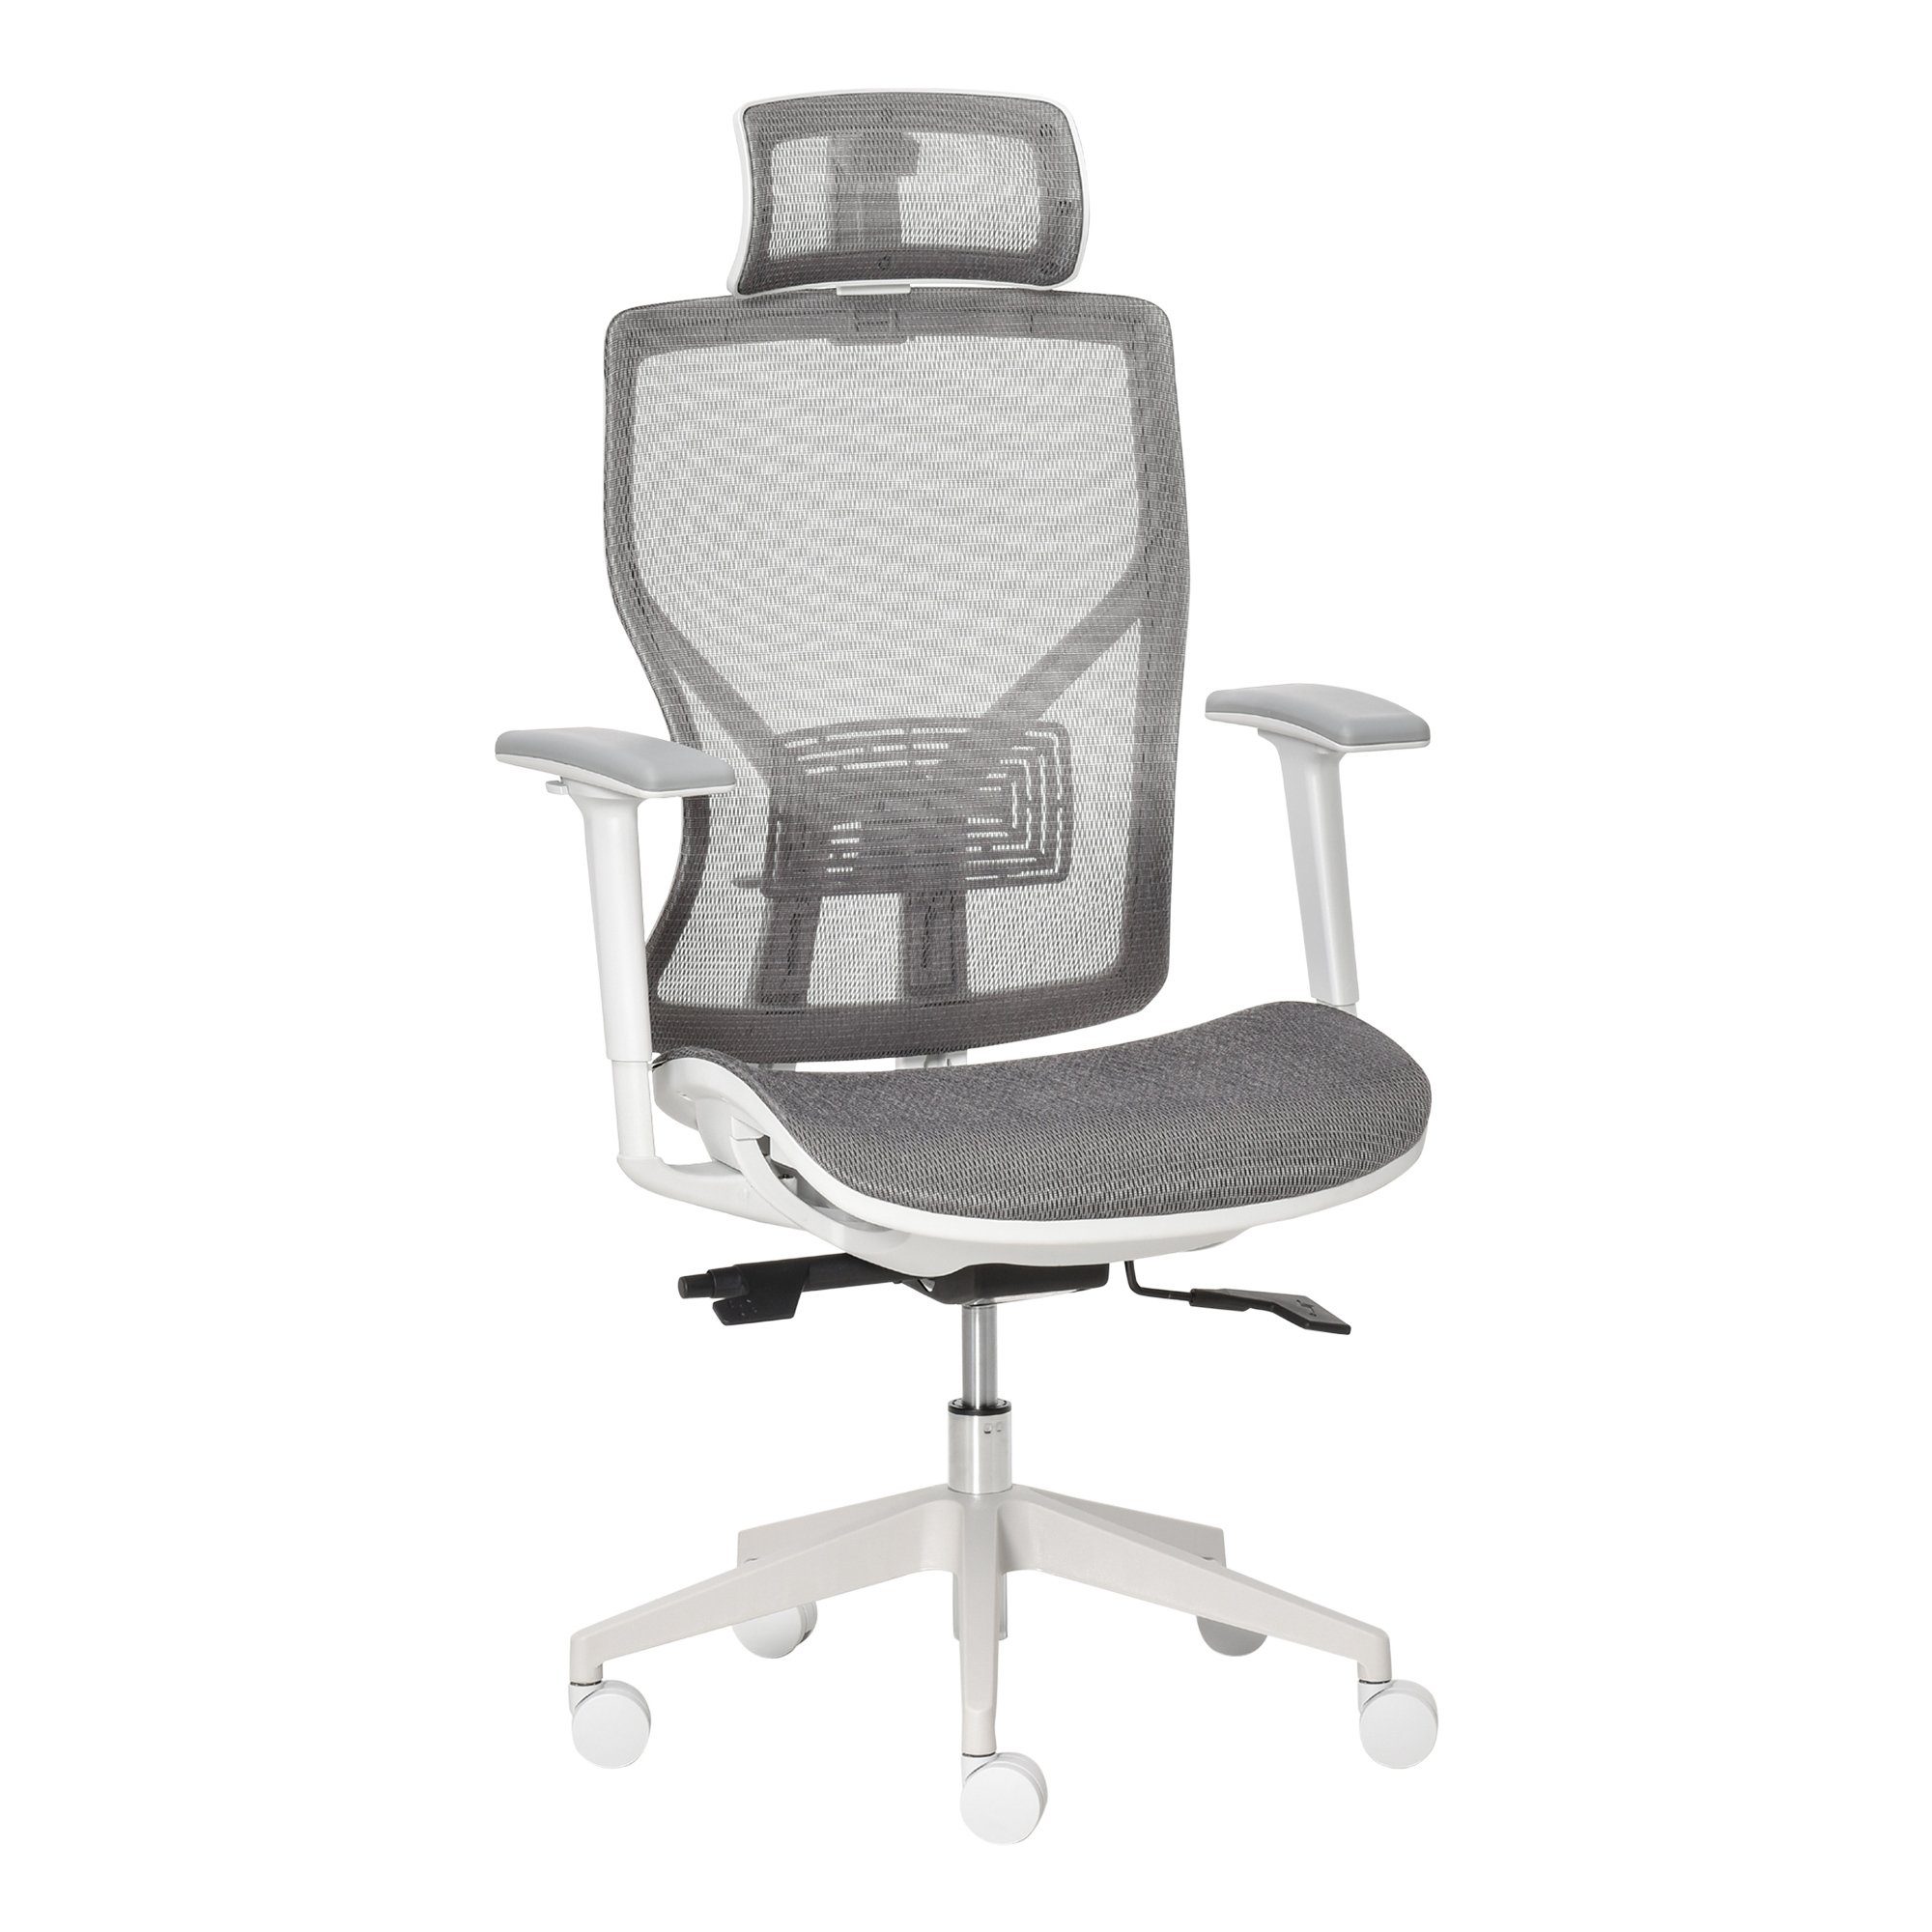 Vinsetto Schreibtischstuhl Bürostuhl ergonomisch geformt, high-end gaslift,  Höhenverstellbarer Sitz nach Ihren Bedürfnissen